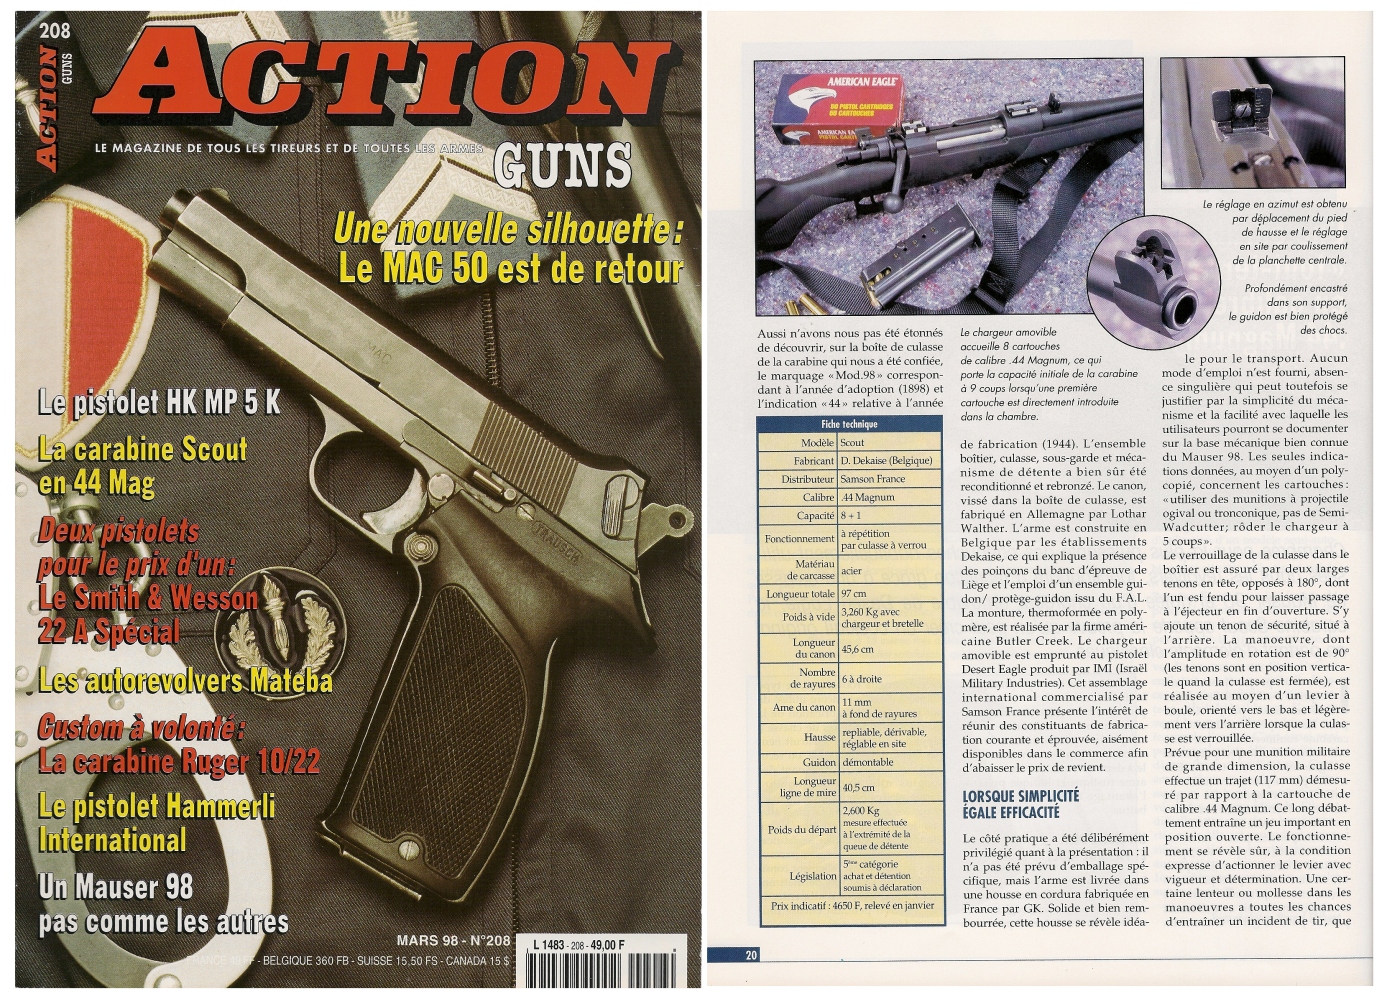 Le banc d'essai de la carabine « Scout » Samson France a été publié sur 5 pages dans le magazine Action Guns n°208 (mars 1998). 